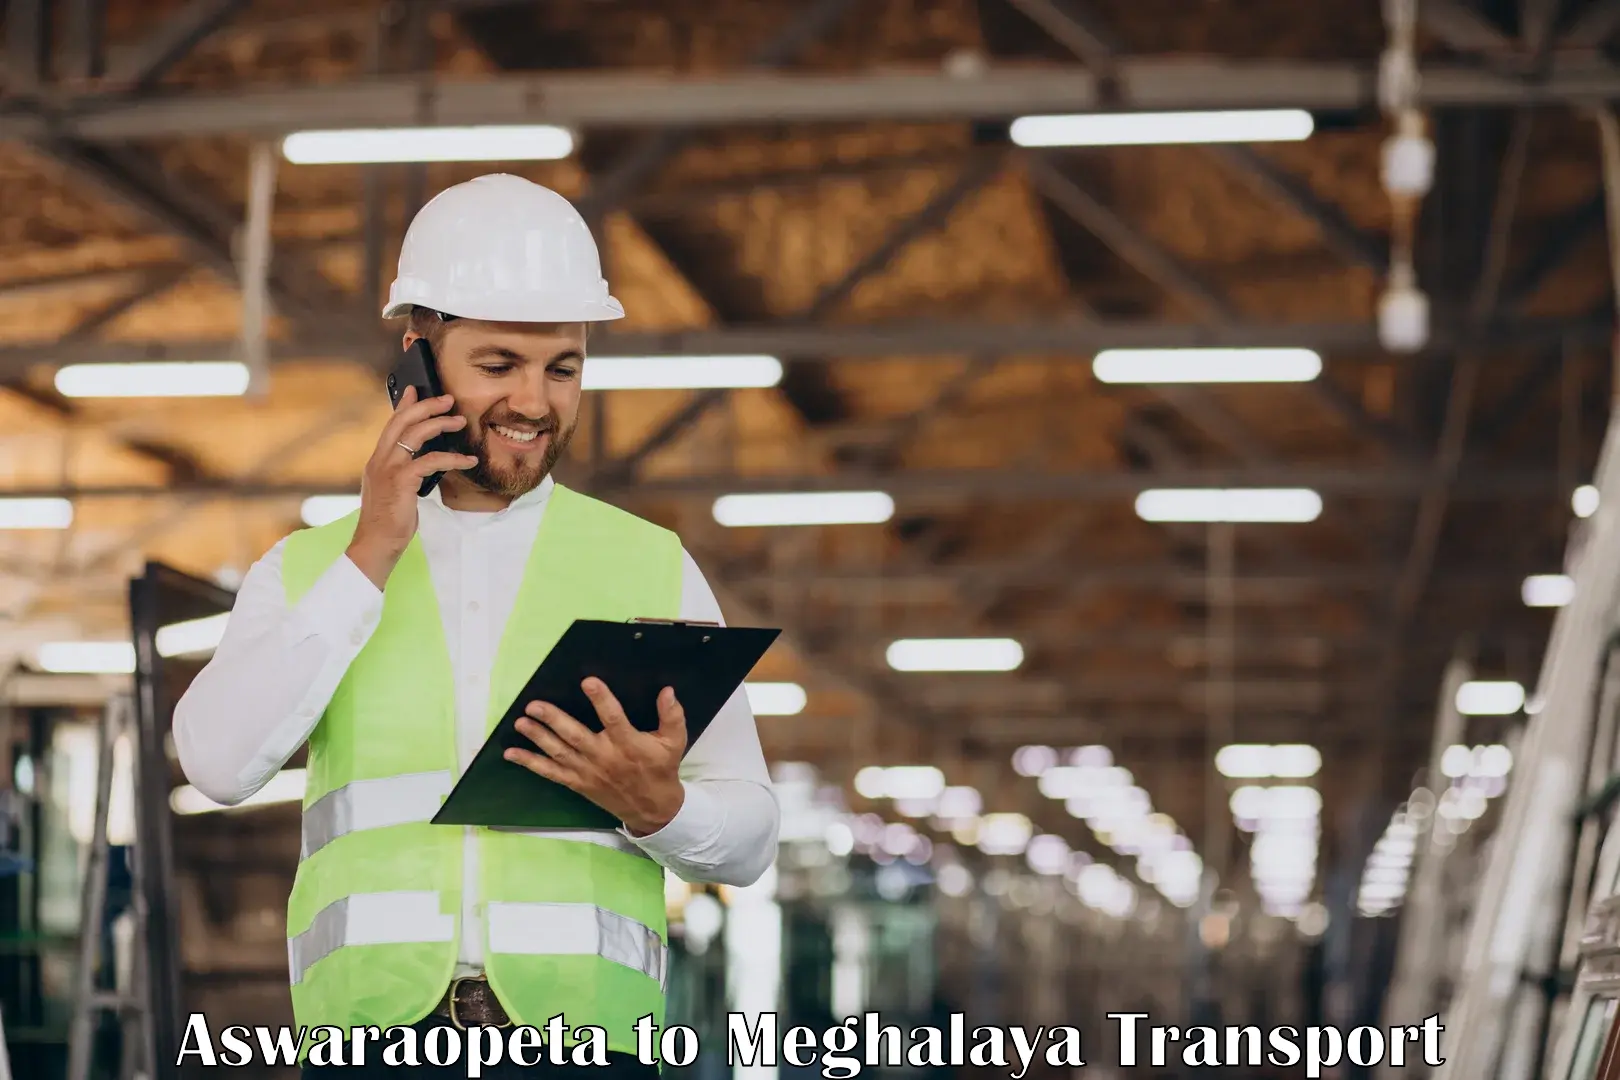 Daily transport service Aswaraopeta to NIT Meghalaya